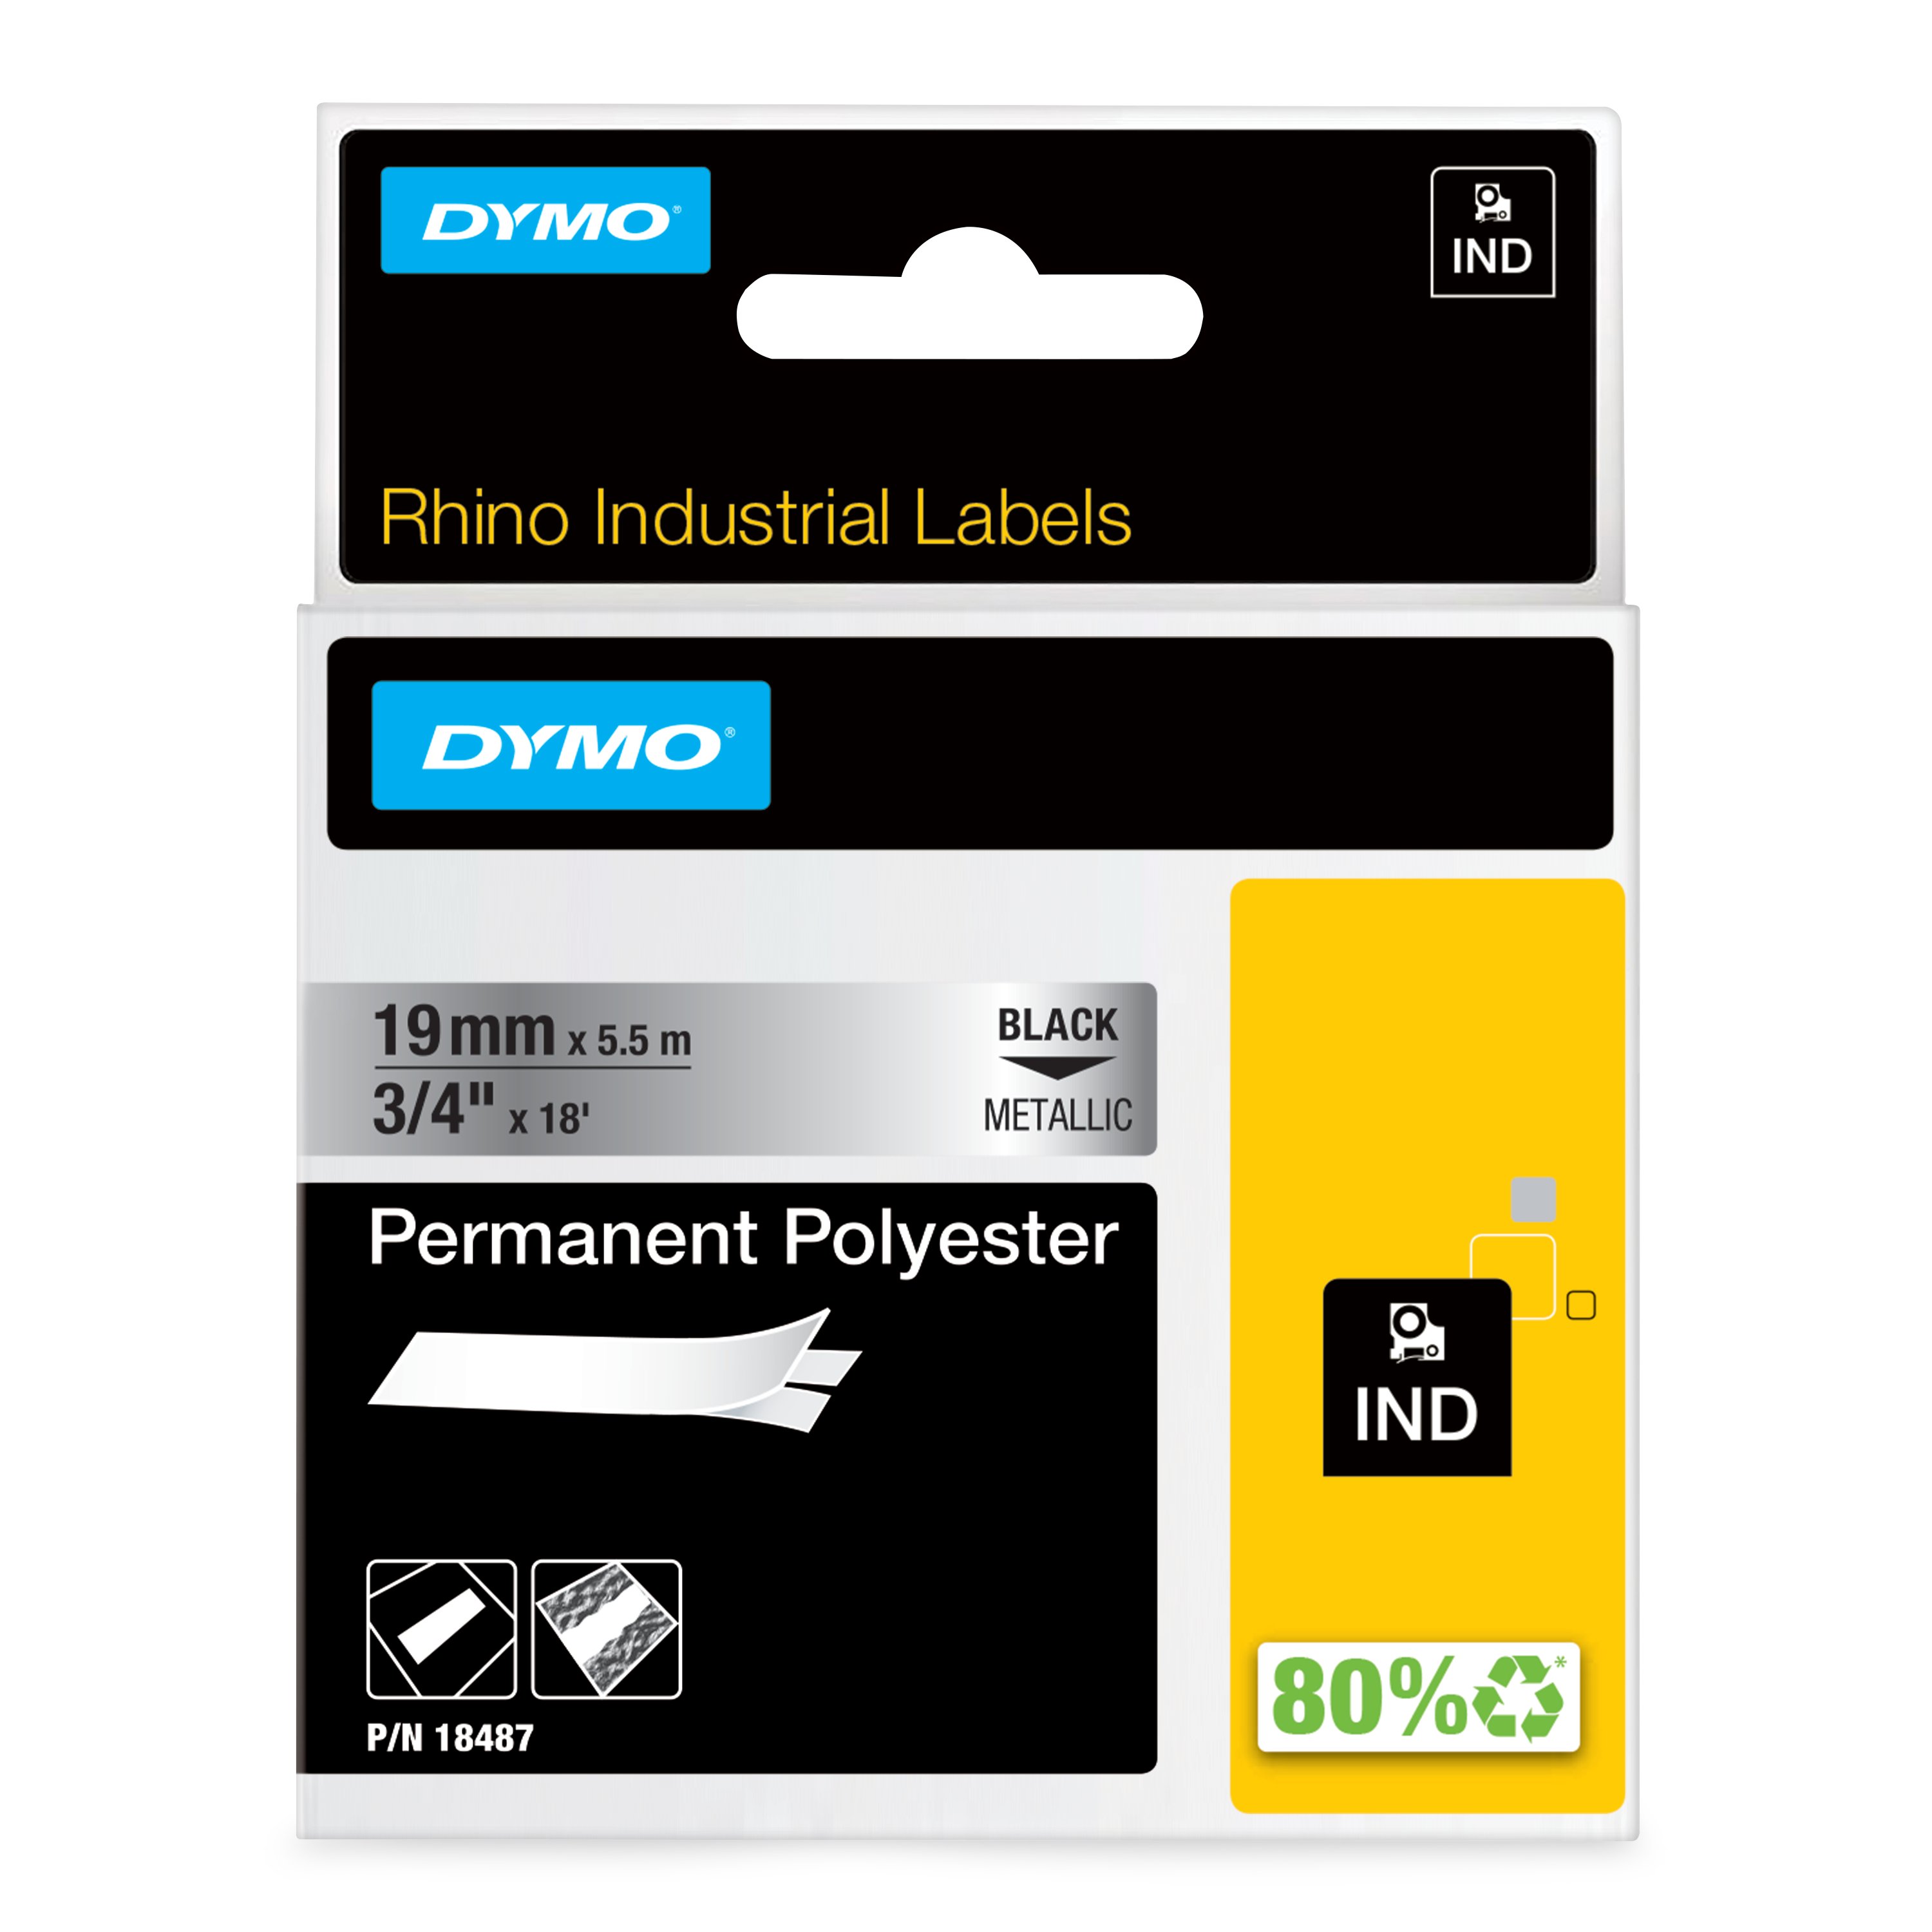 DYMO | Original IND-Schriftband für Rhino | Permanent Polyester | schwarz auf metallic | 19mm x 5,5m